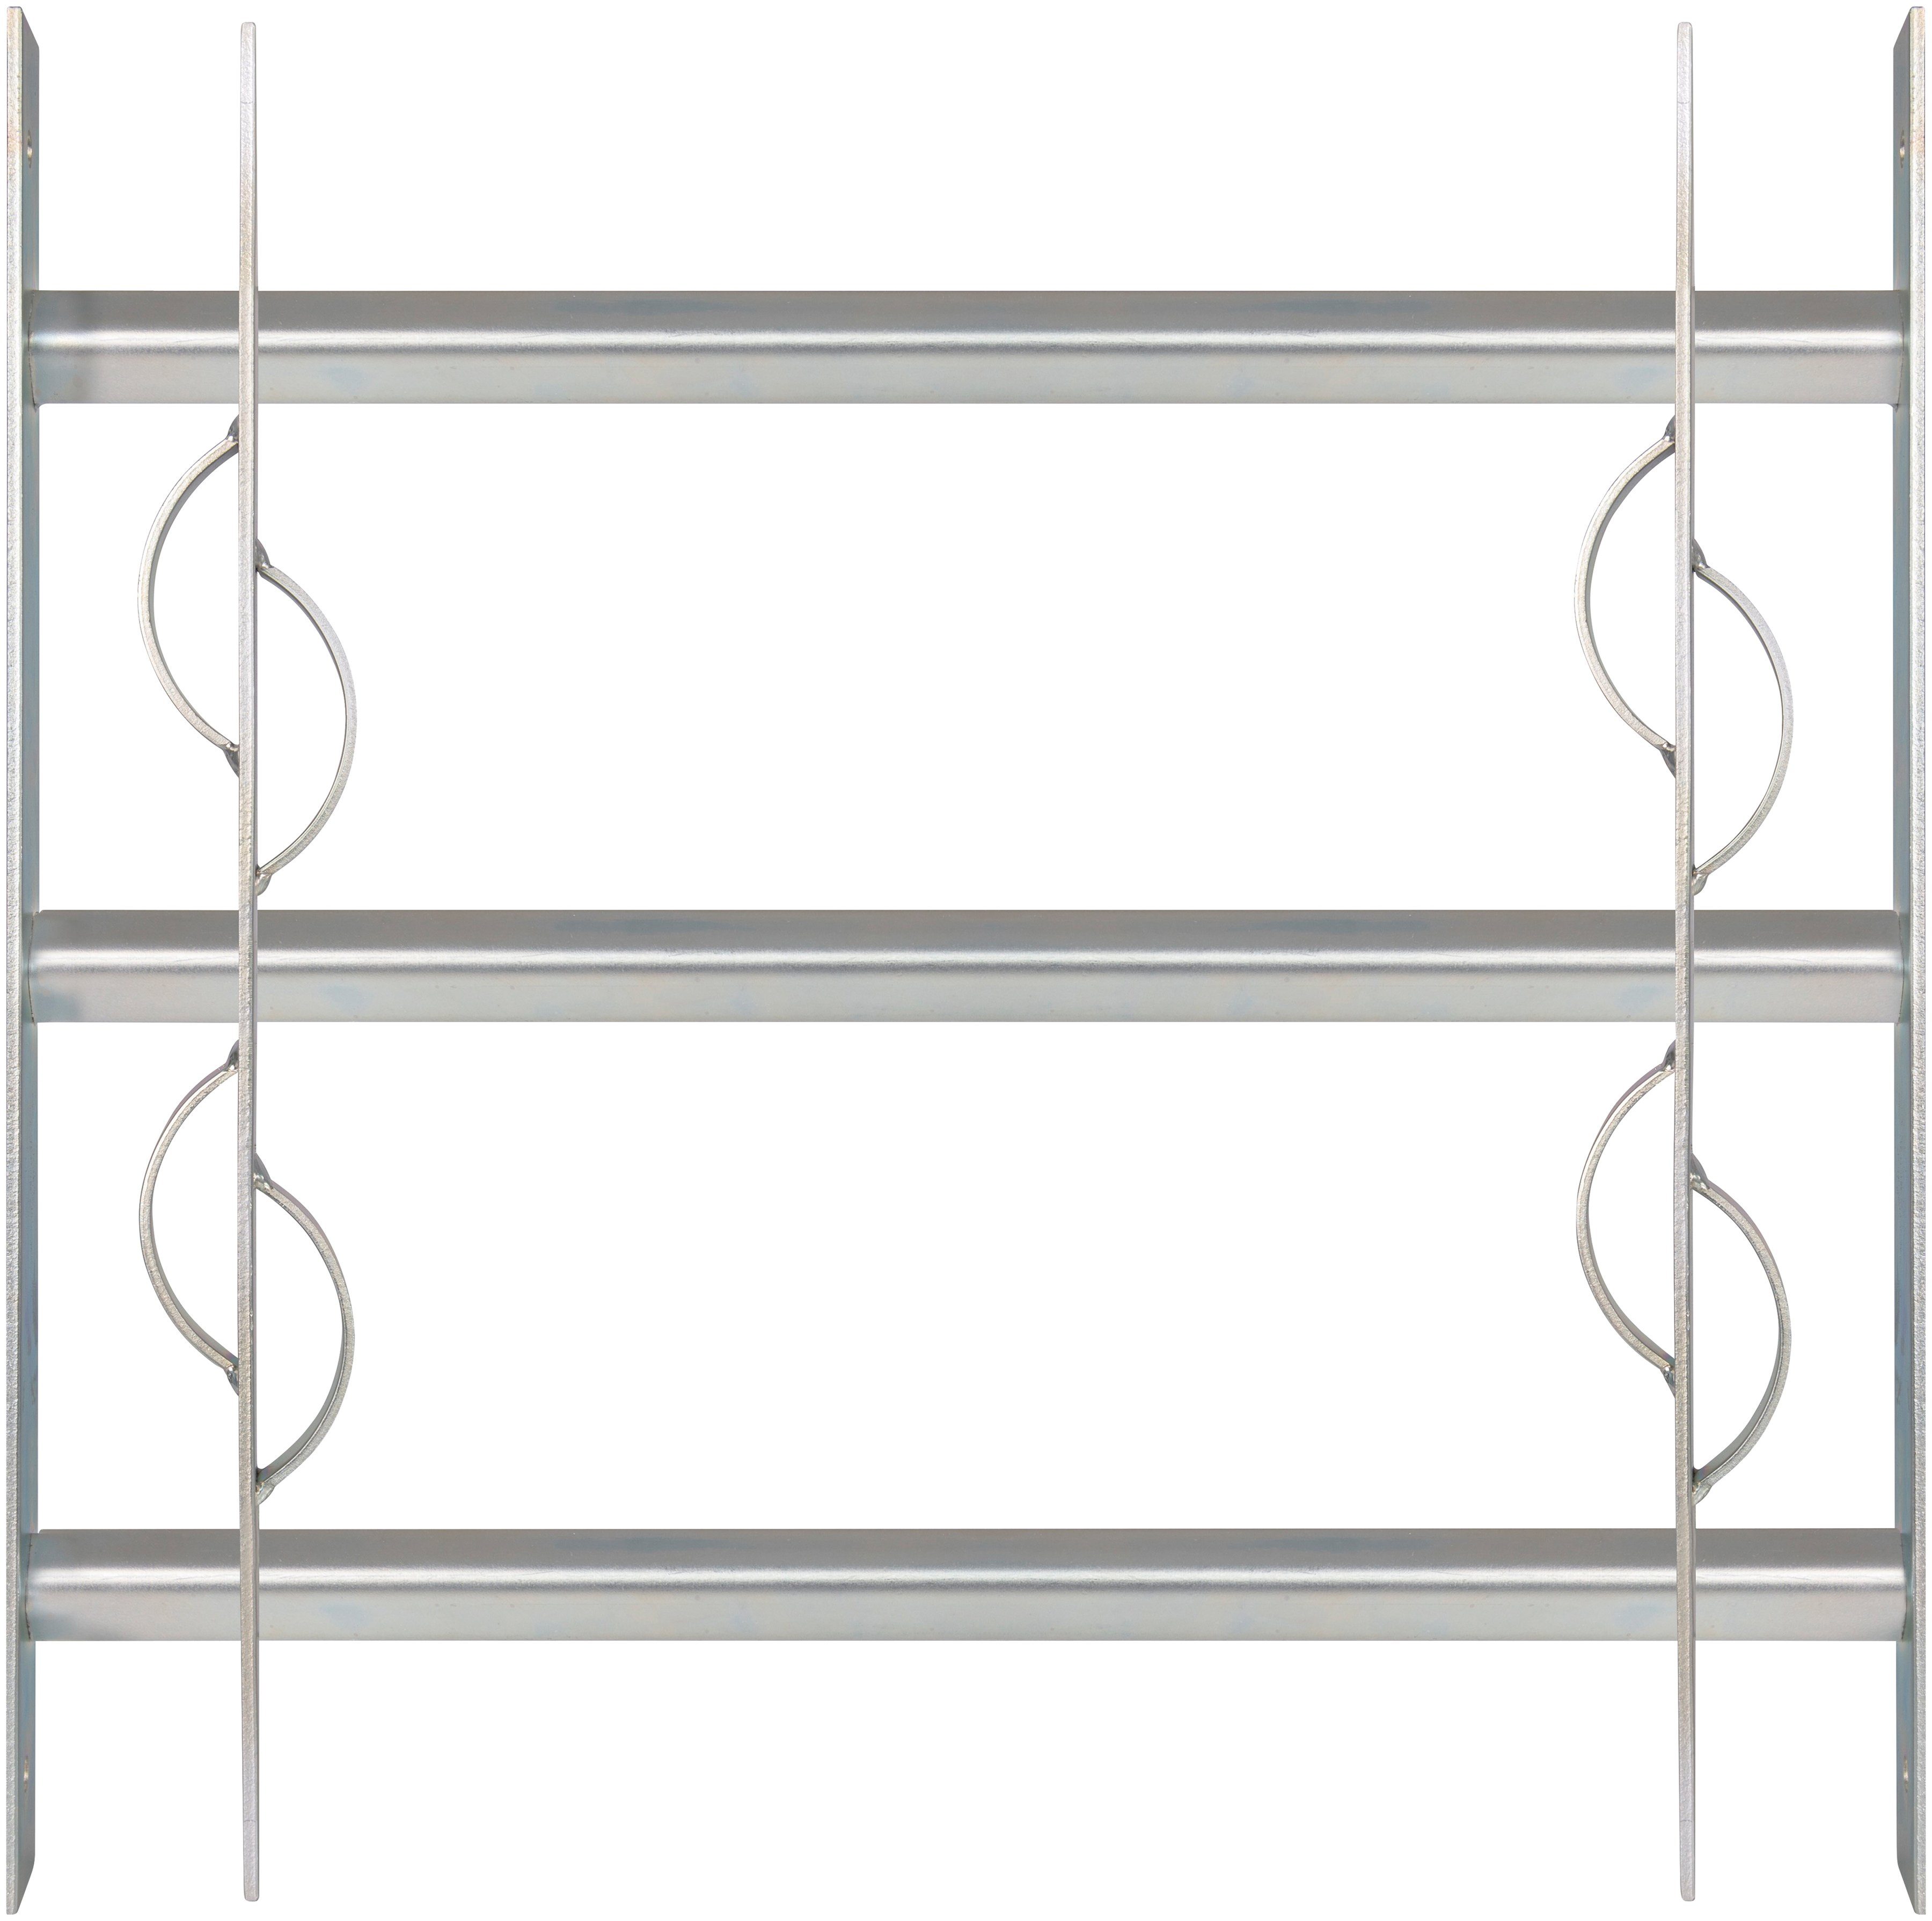 Alberts Fensterschutzgitter Secorino Style, Breite ausziehbar 50-65 cm, versch. Höhen